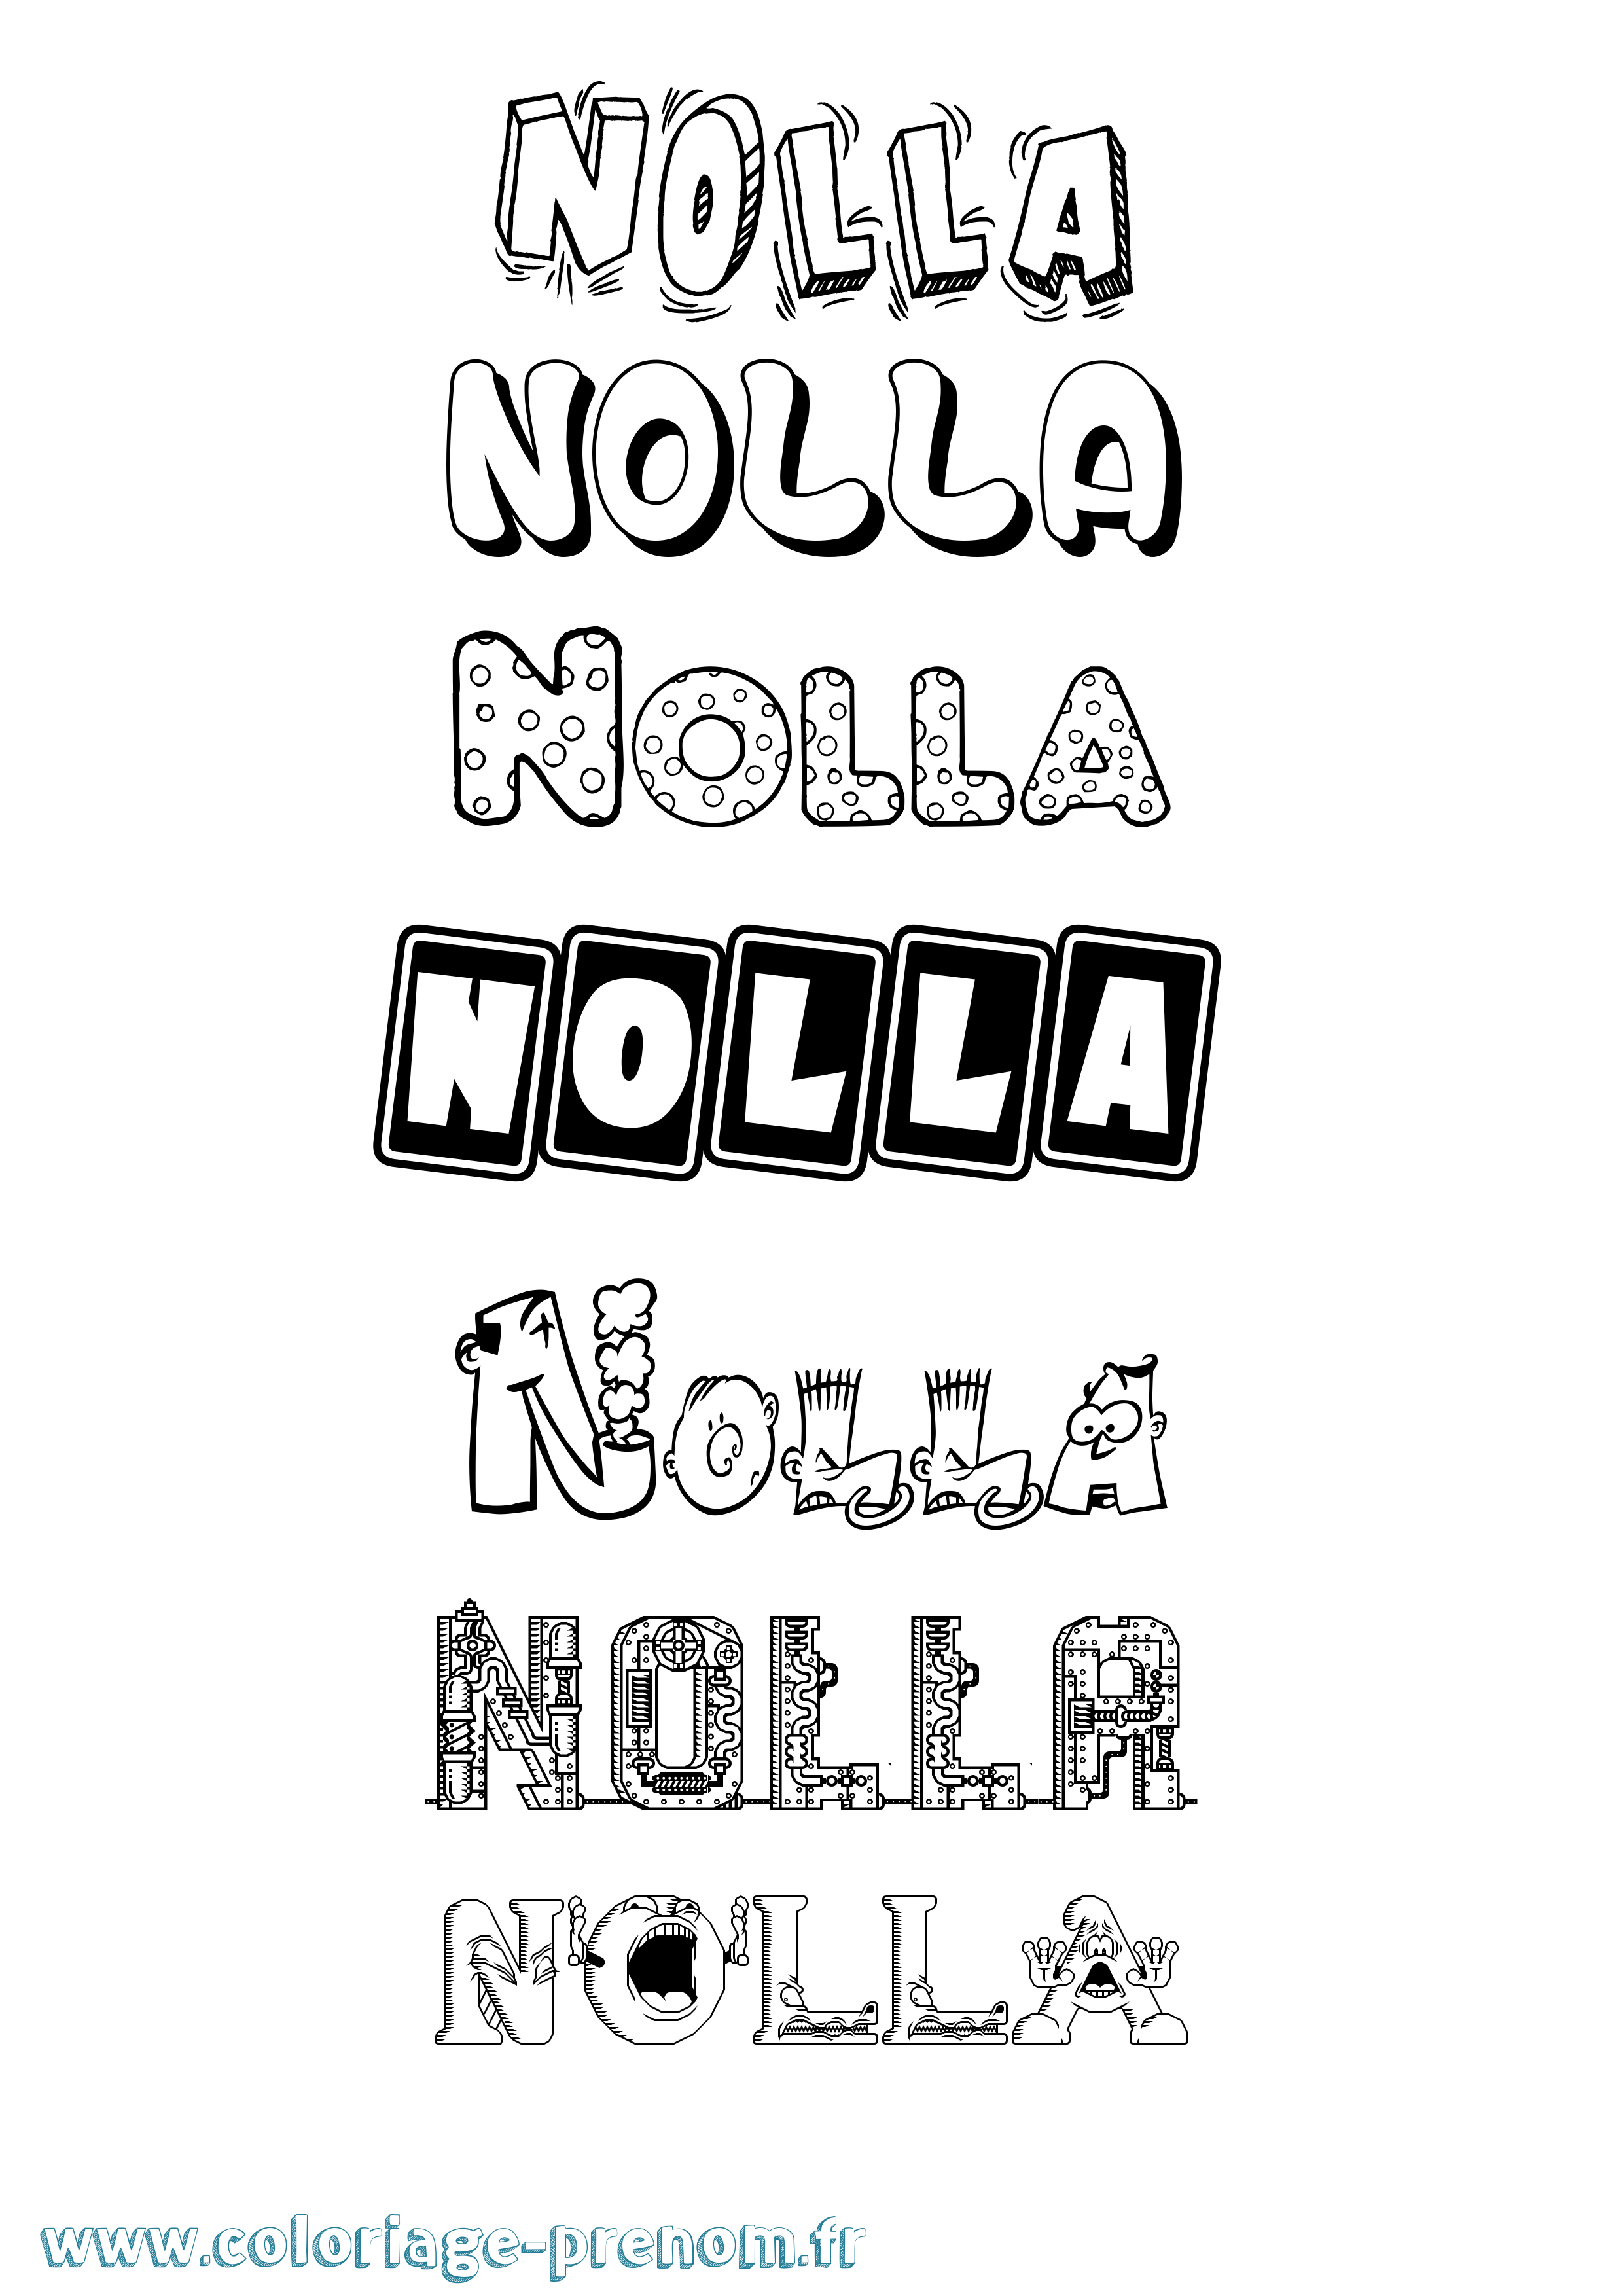 Coloriage prénom Nolla Fun